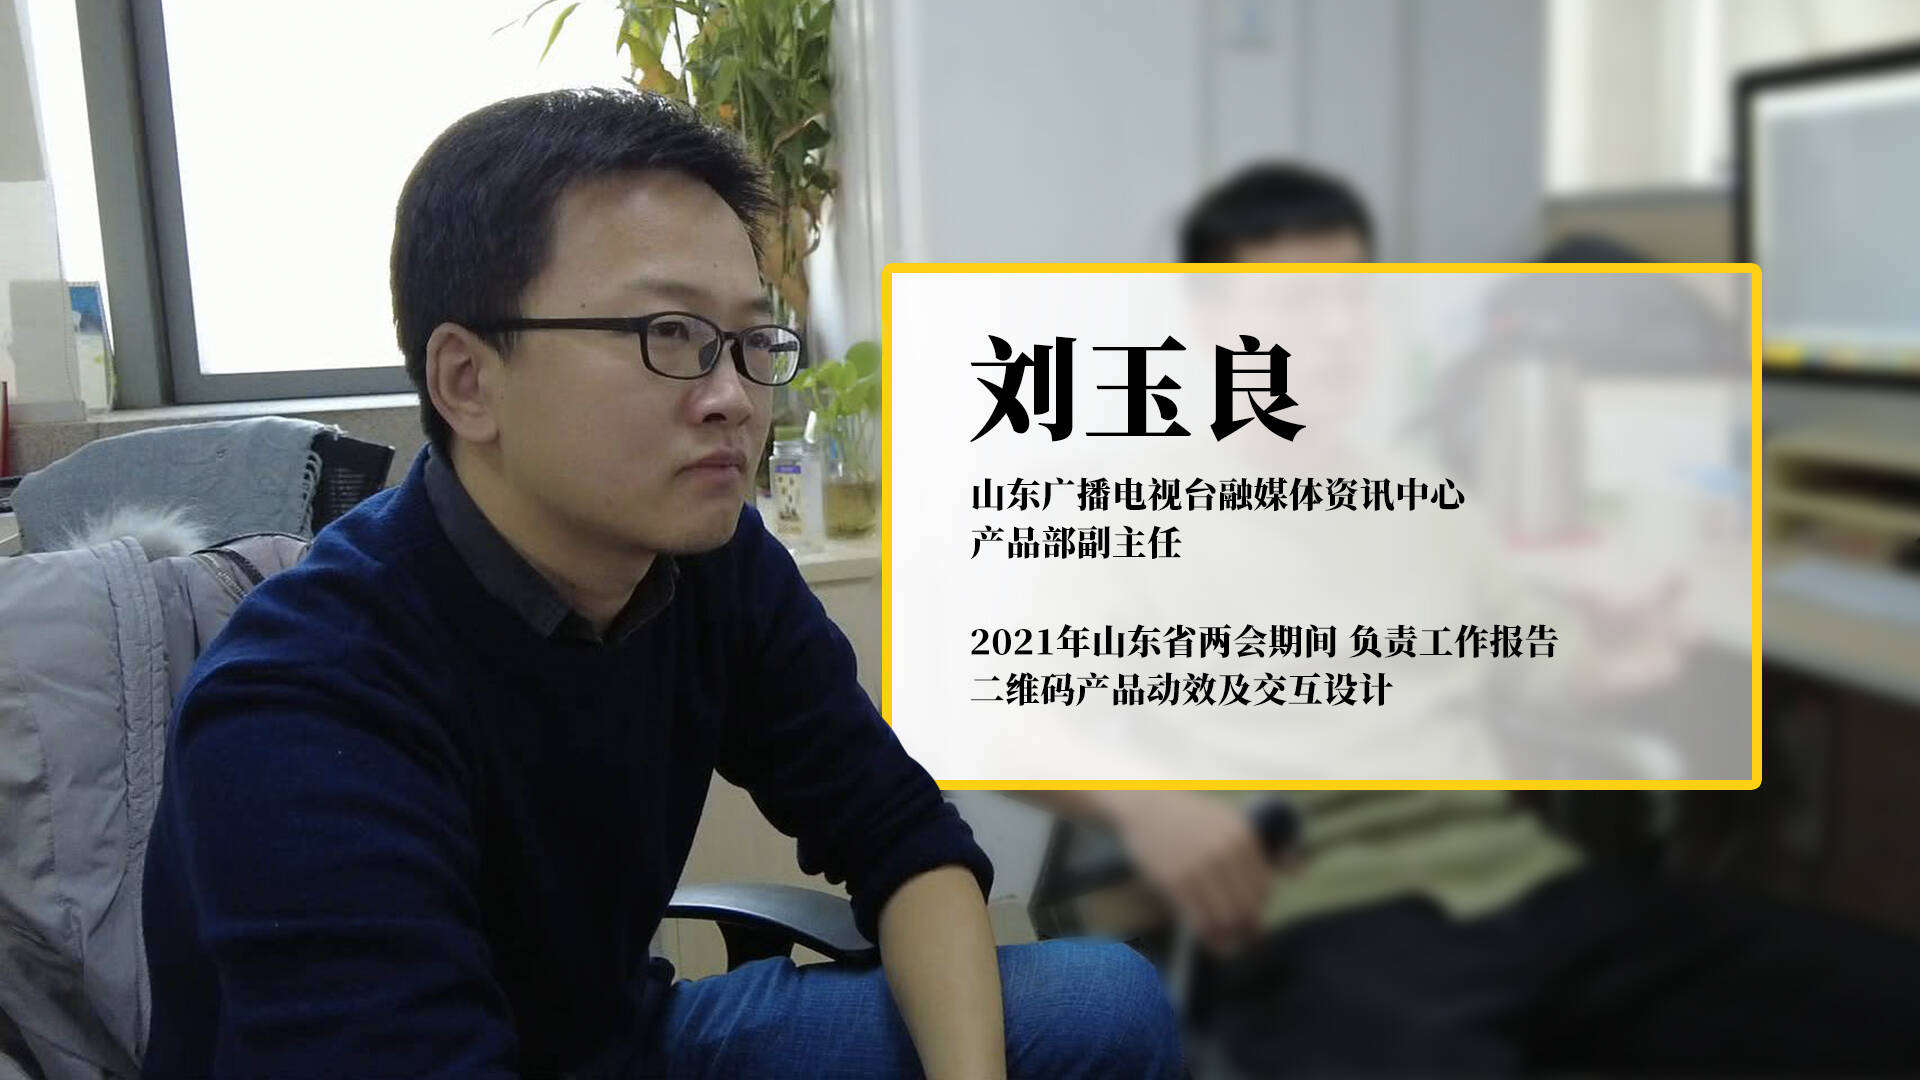 刘玉良,负责2021年山东省两会期间工作报告二维码产品动效及交互设计